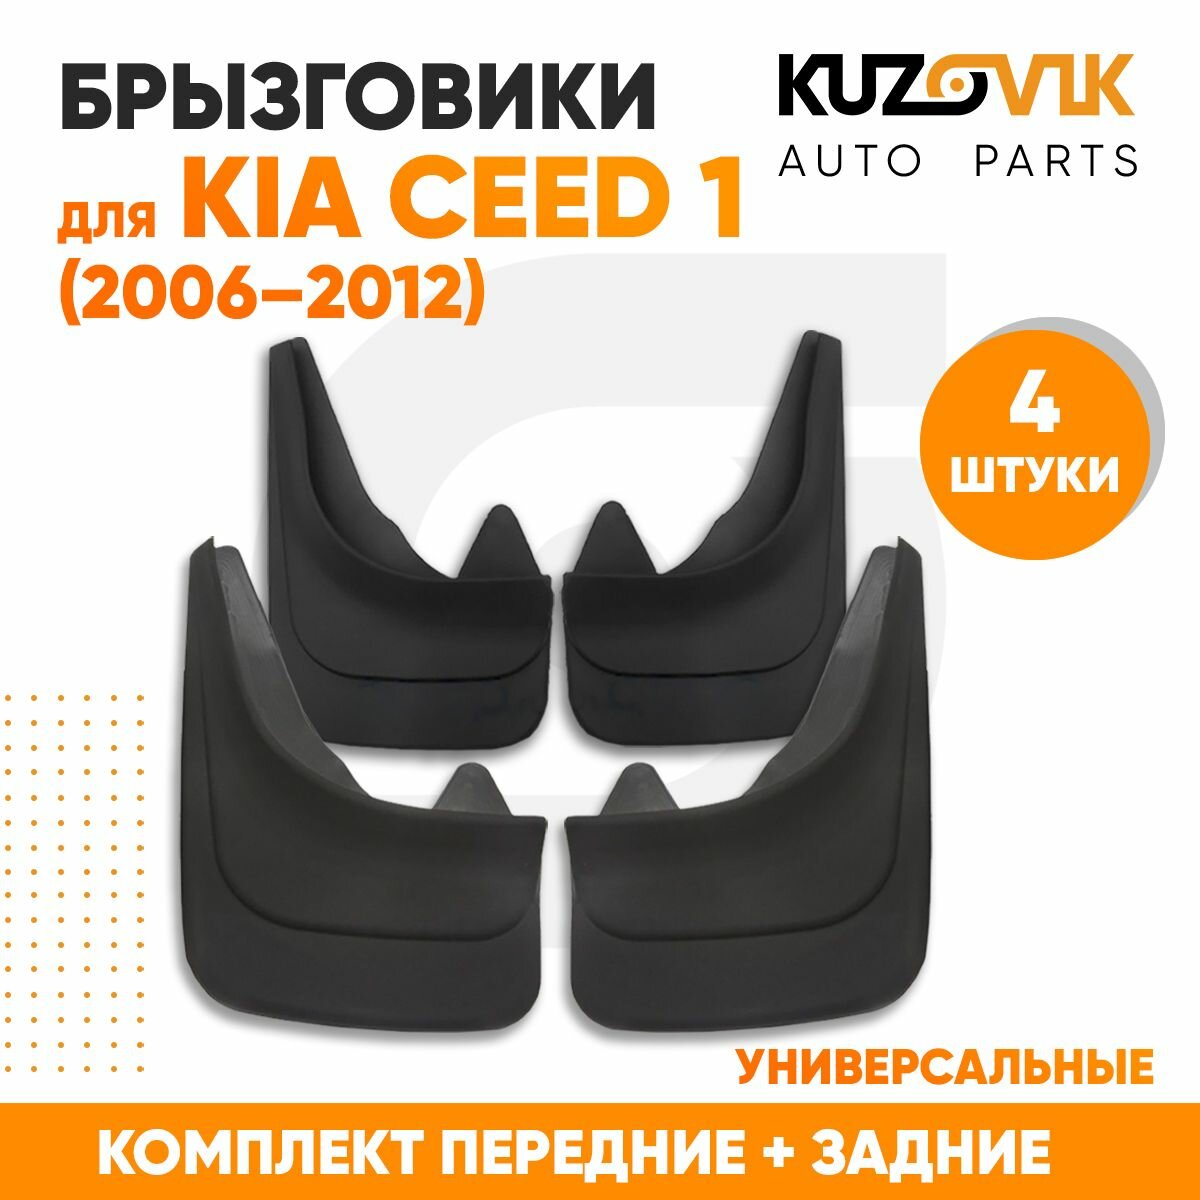 Брызговики универсальные для Киа Сид Kia Ceed 1 (2006-2012) передние + задние резиновые комплект 4 штуки